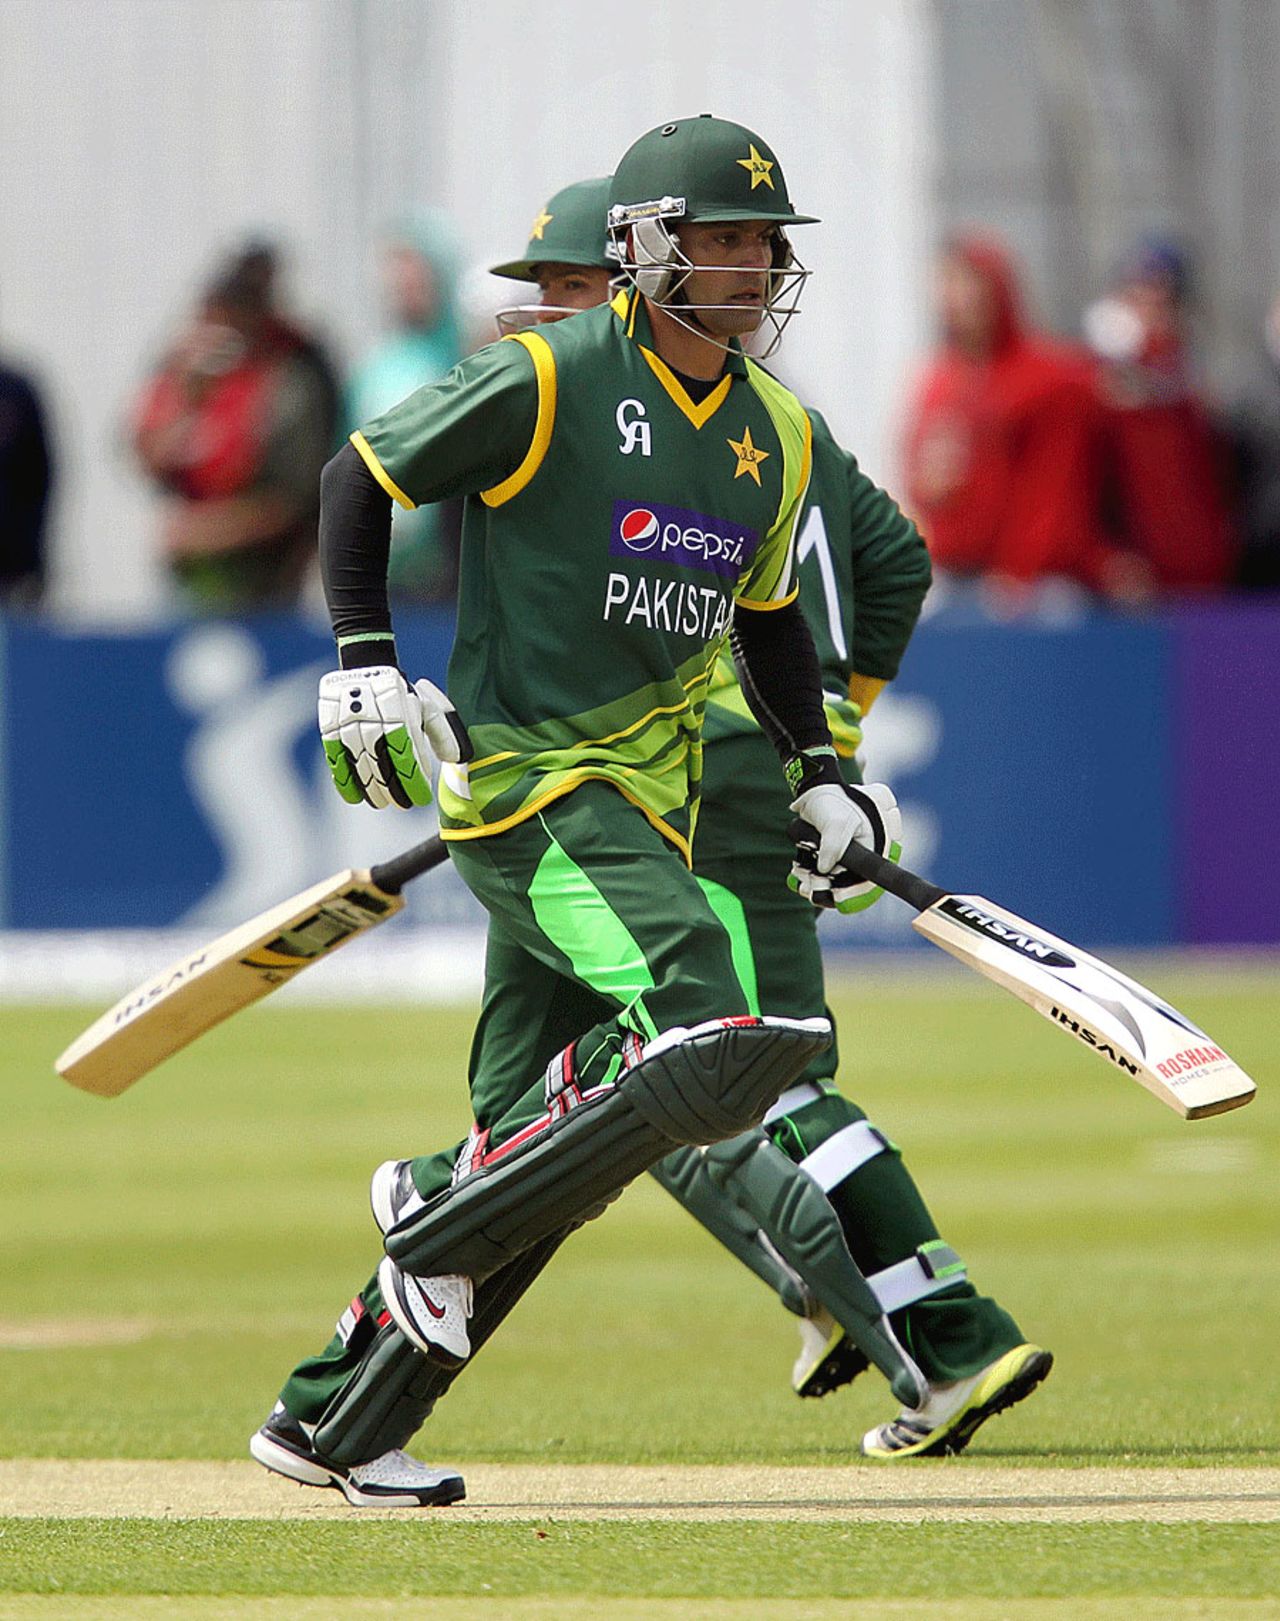 Mohammad Hafeez takes a run, Ireland v Pakistan, 1st ODI, Dublin, May 23, 2013